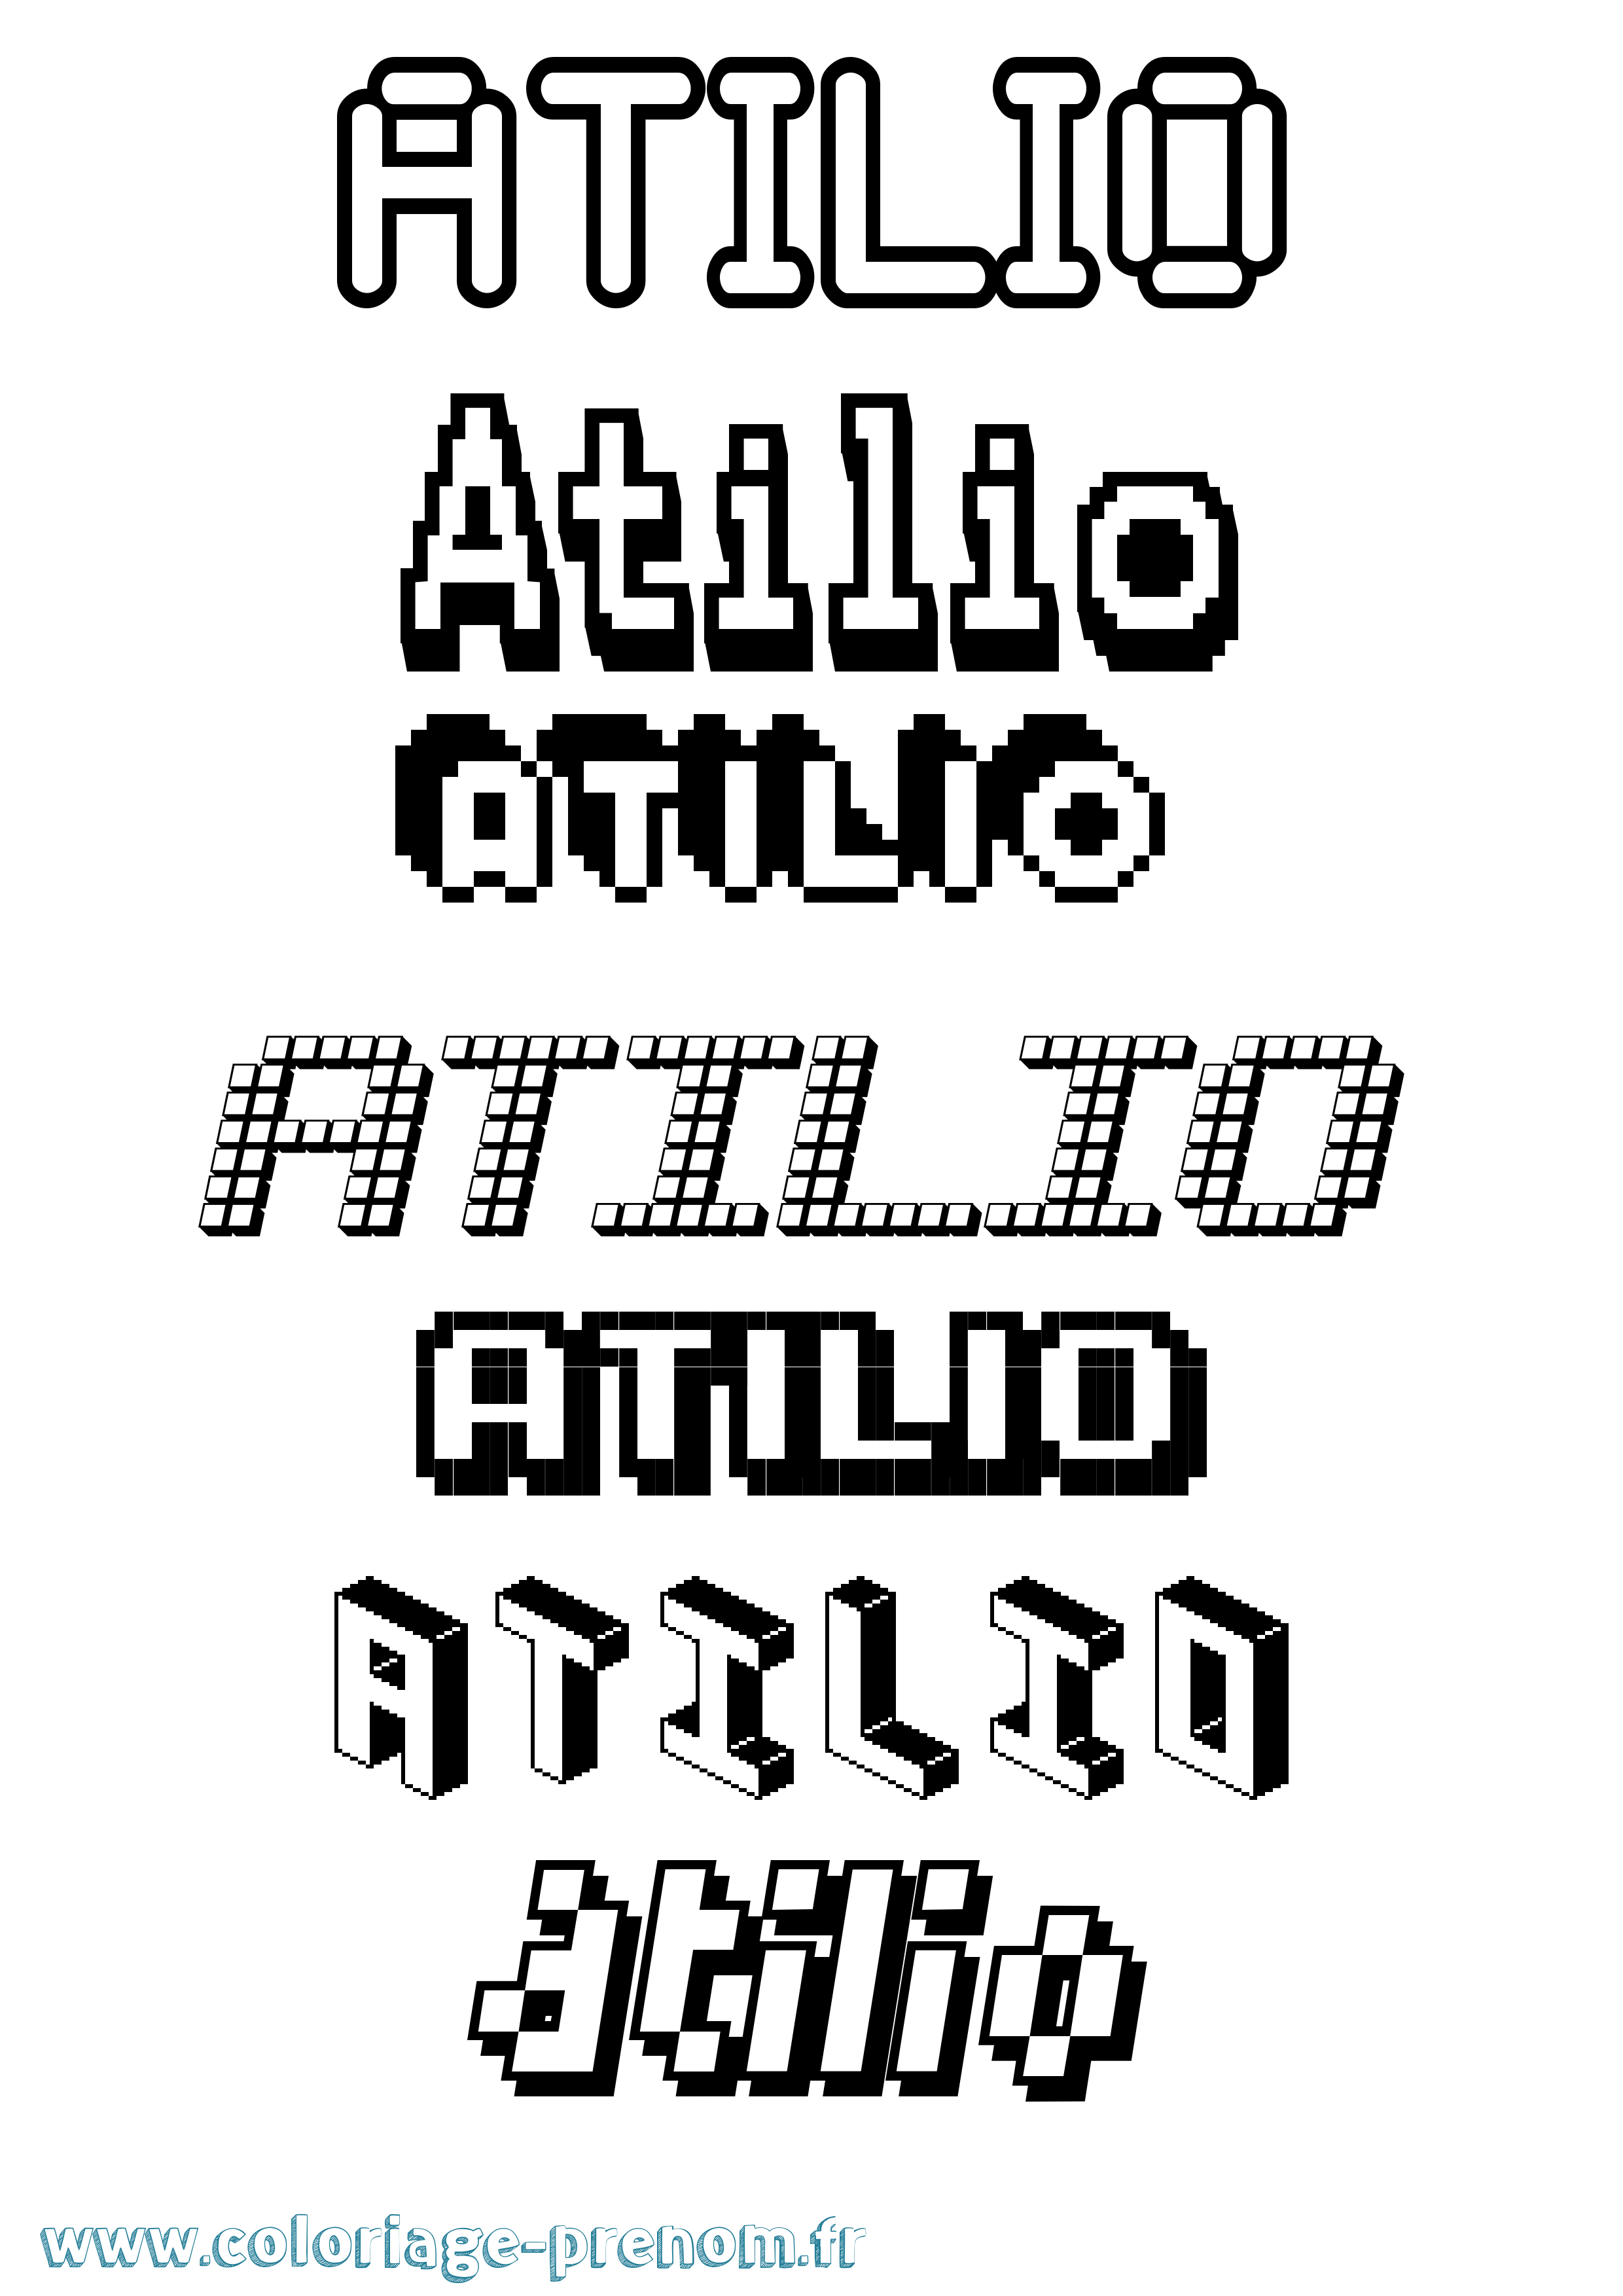 Coloriage prénom Atilio Pixel